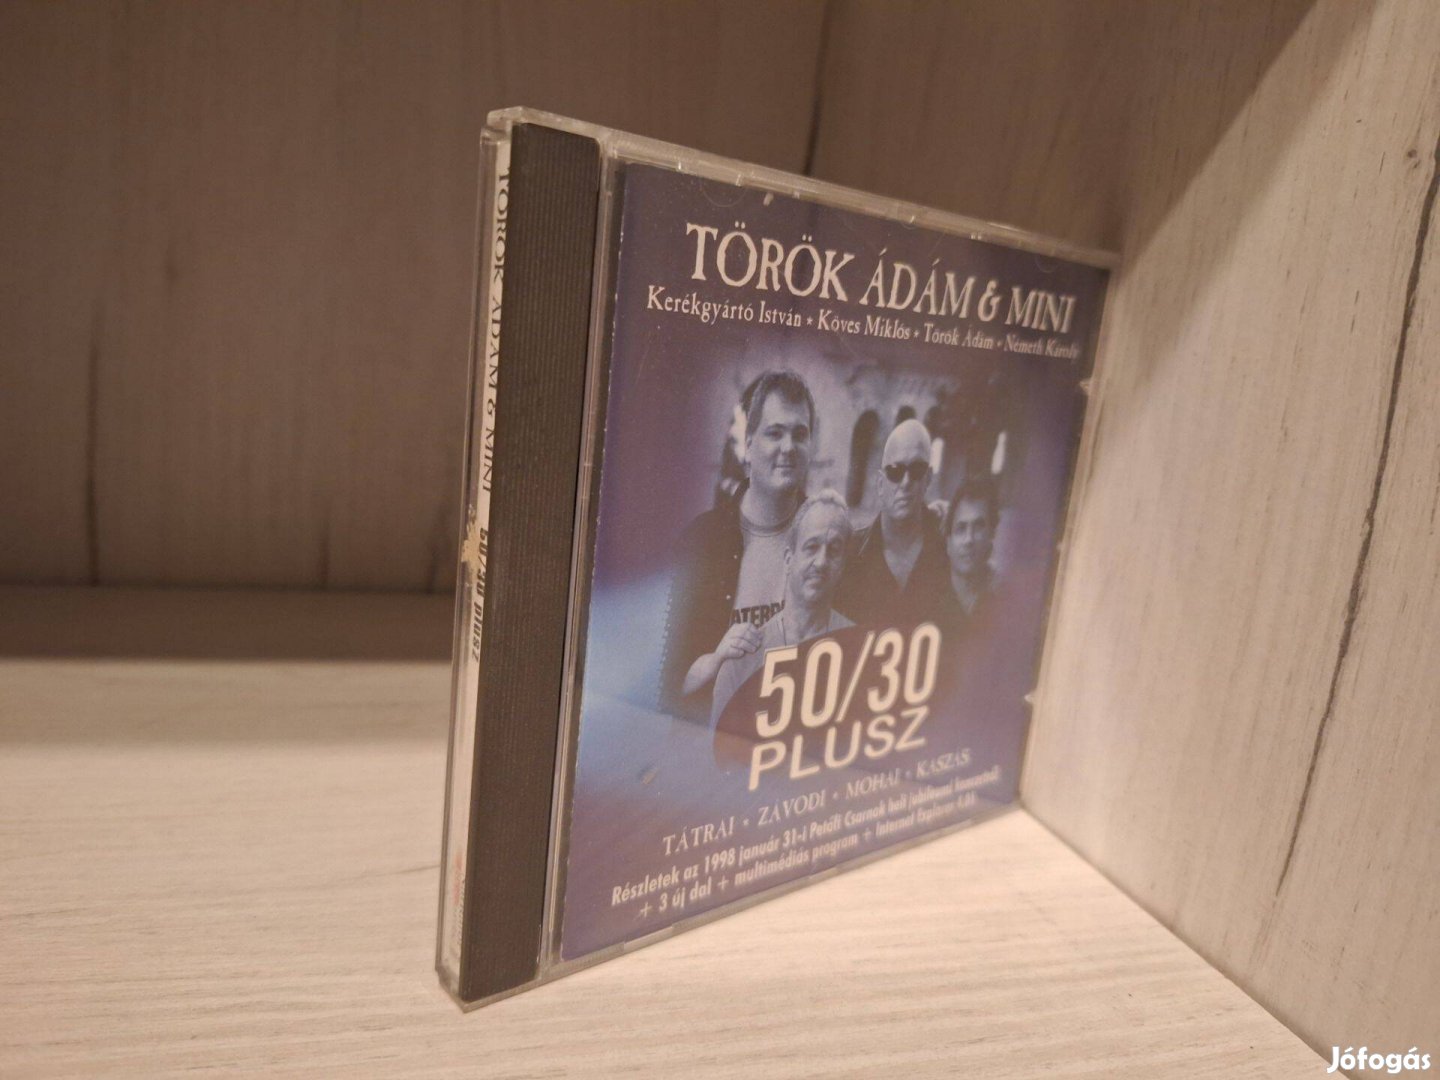 Török Ádám & Mini - 50/30 Plusz CD